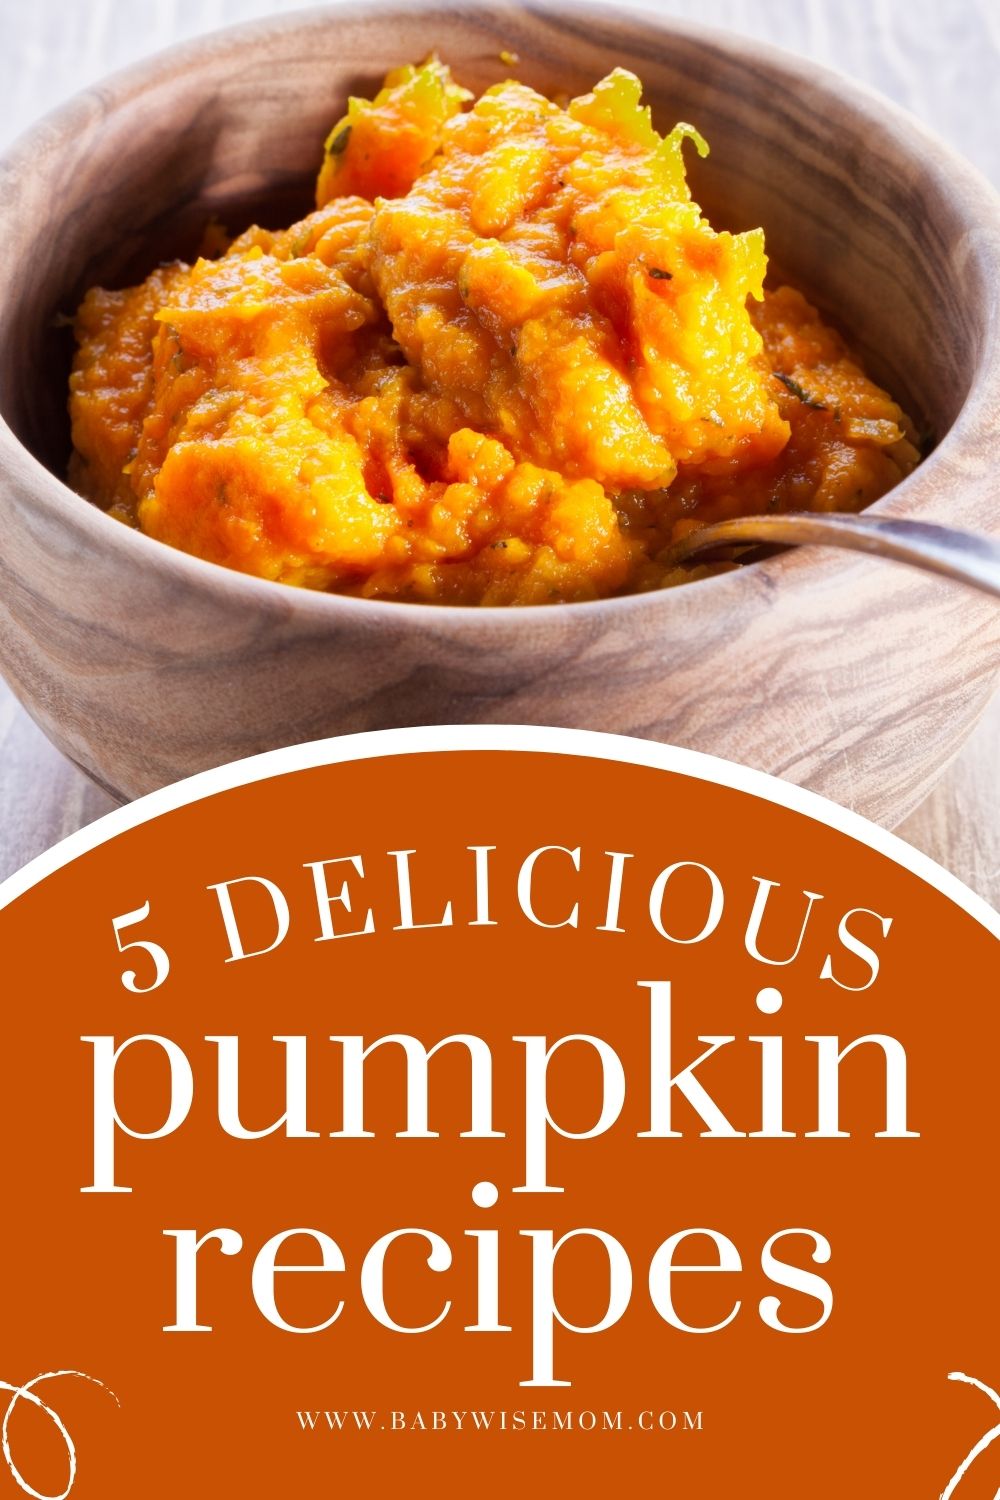 5 delicious pumpkin recipes